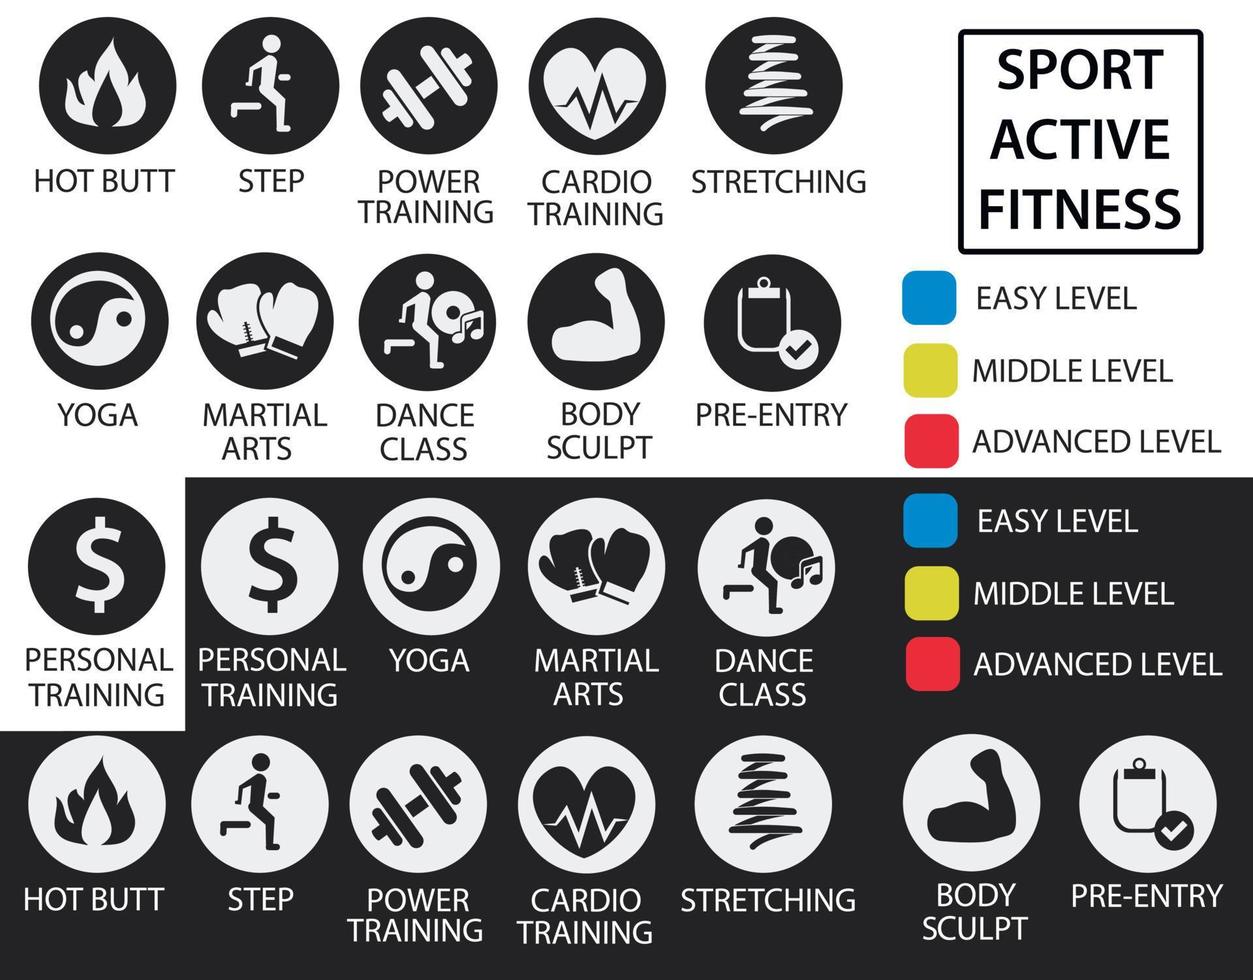 icônes de fitness avec niveaux d'entraînement et de difficulté pour la planification dans les clubs de fitness et de sport. également à utiliser lors du développement de sites Web et de documents. ensemble des icônes sportives. vecteur